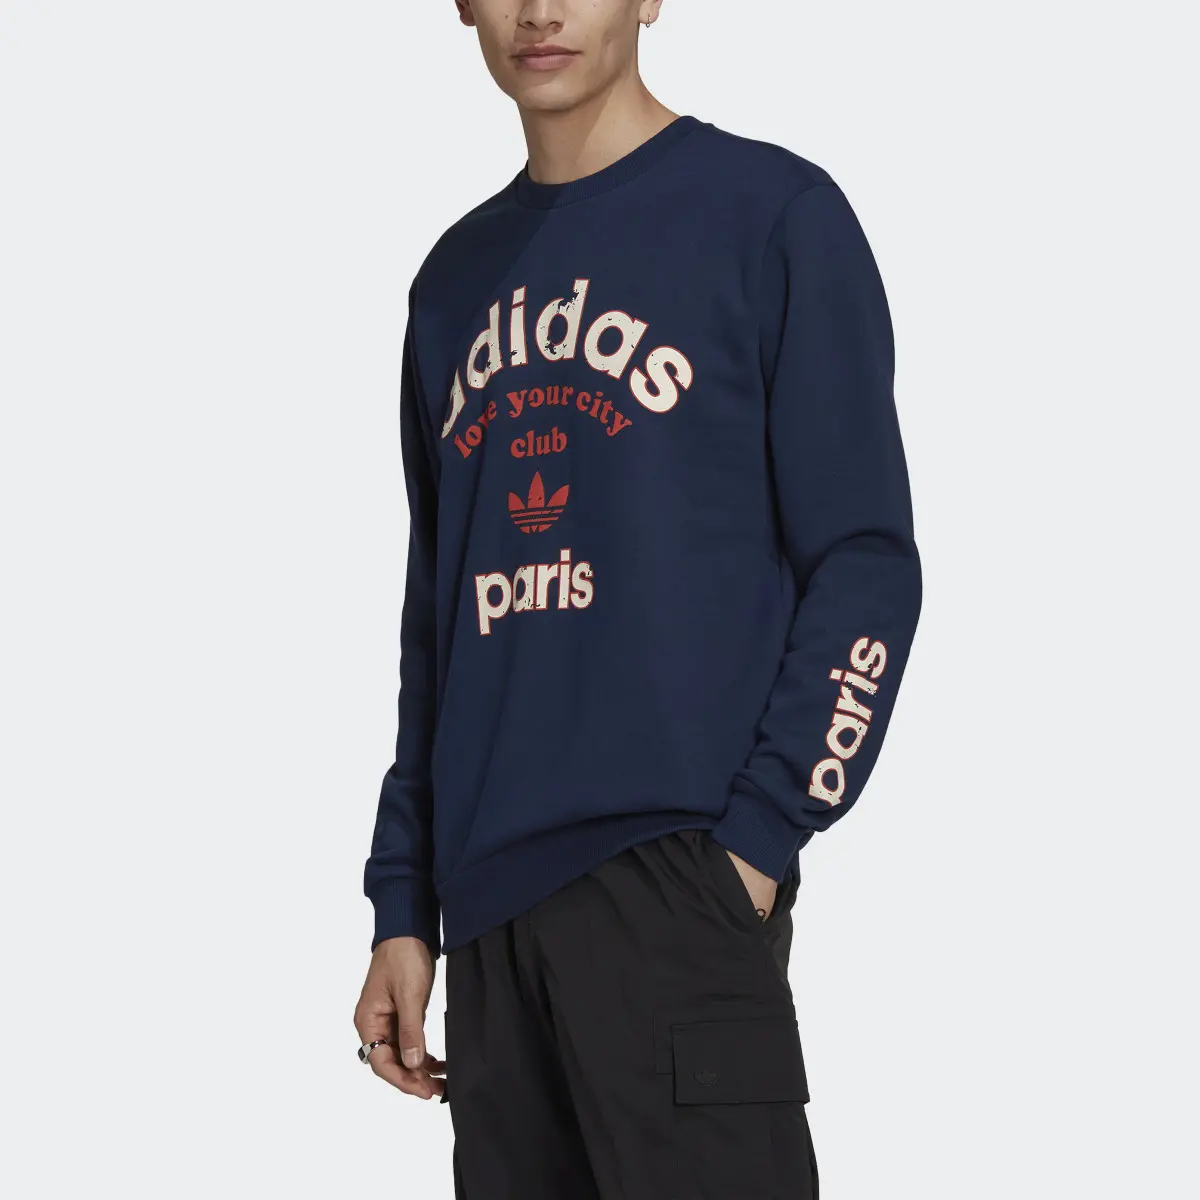 Adidas Paris Collegiate City Crew Sweatshirt. 1